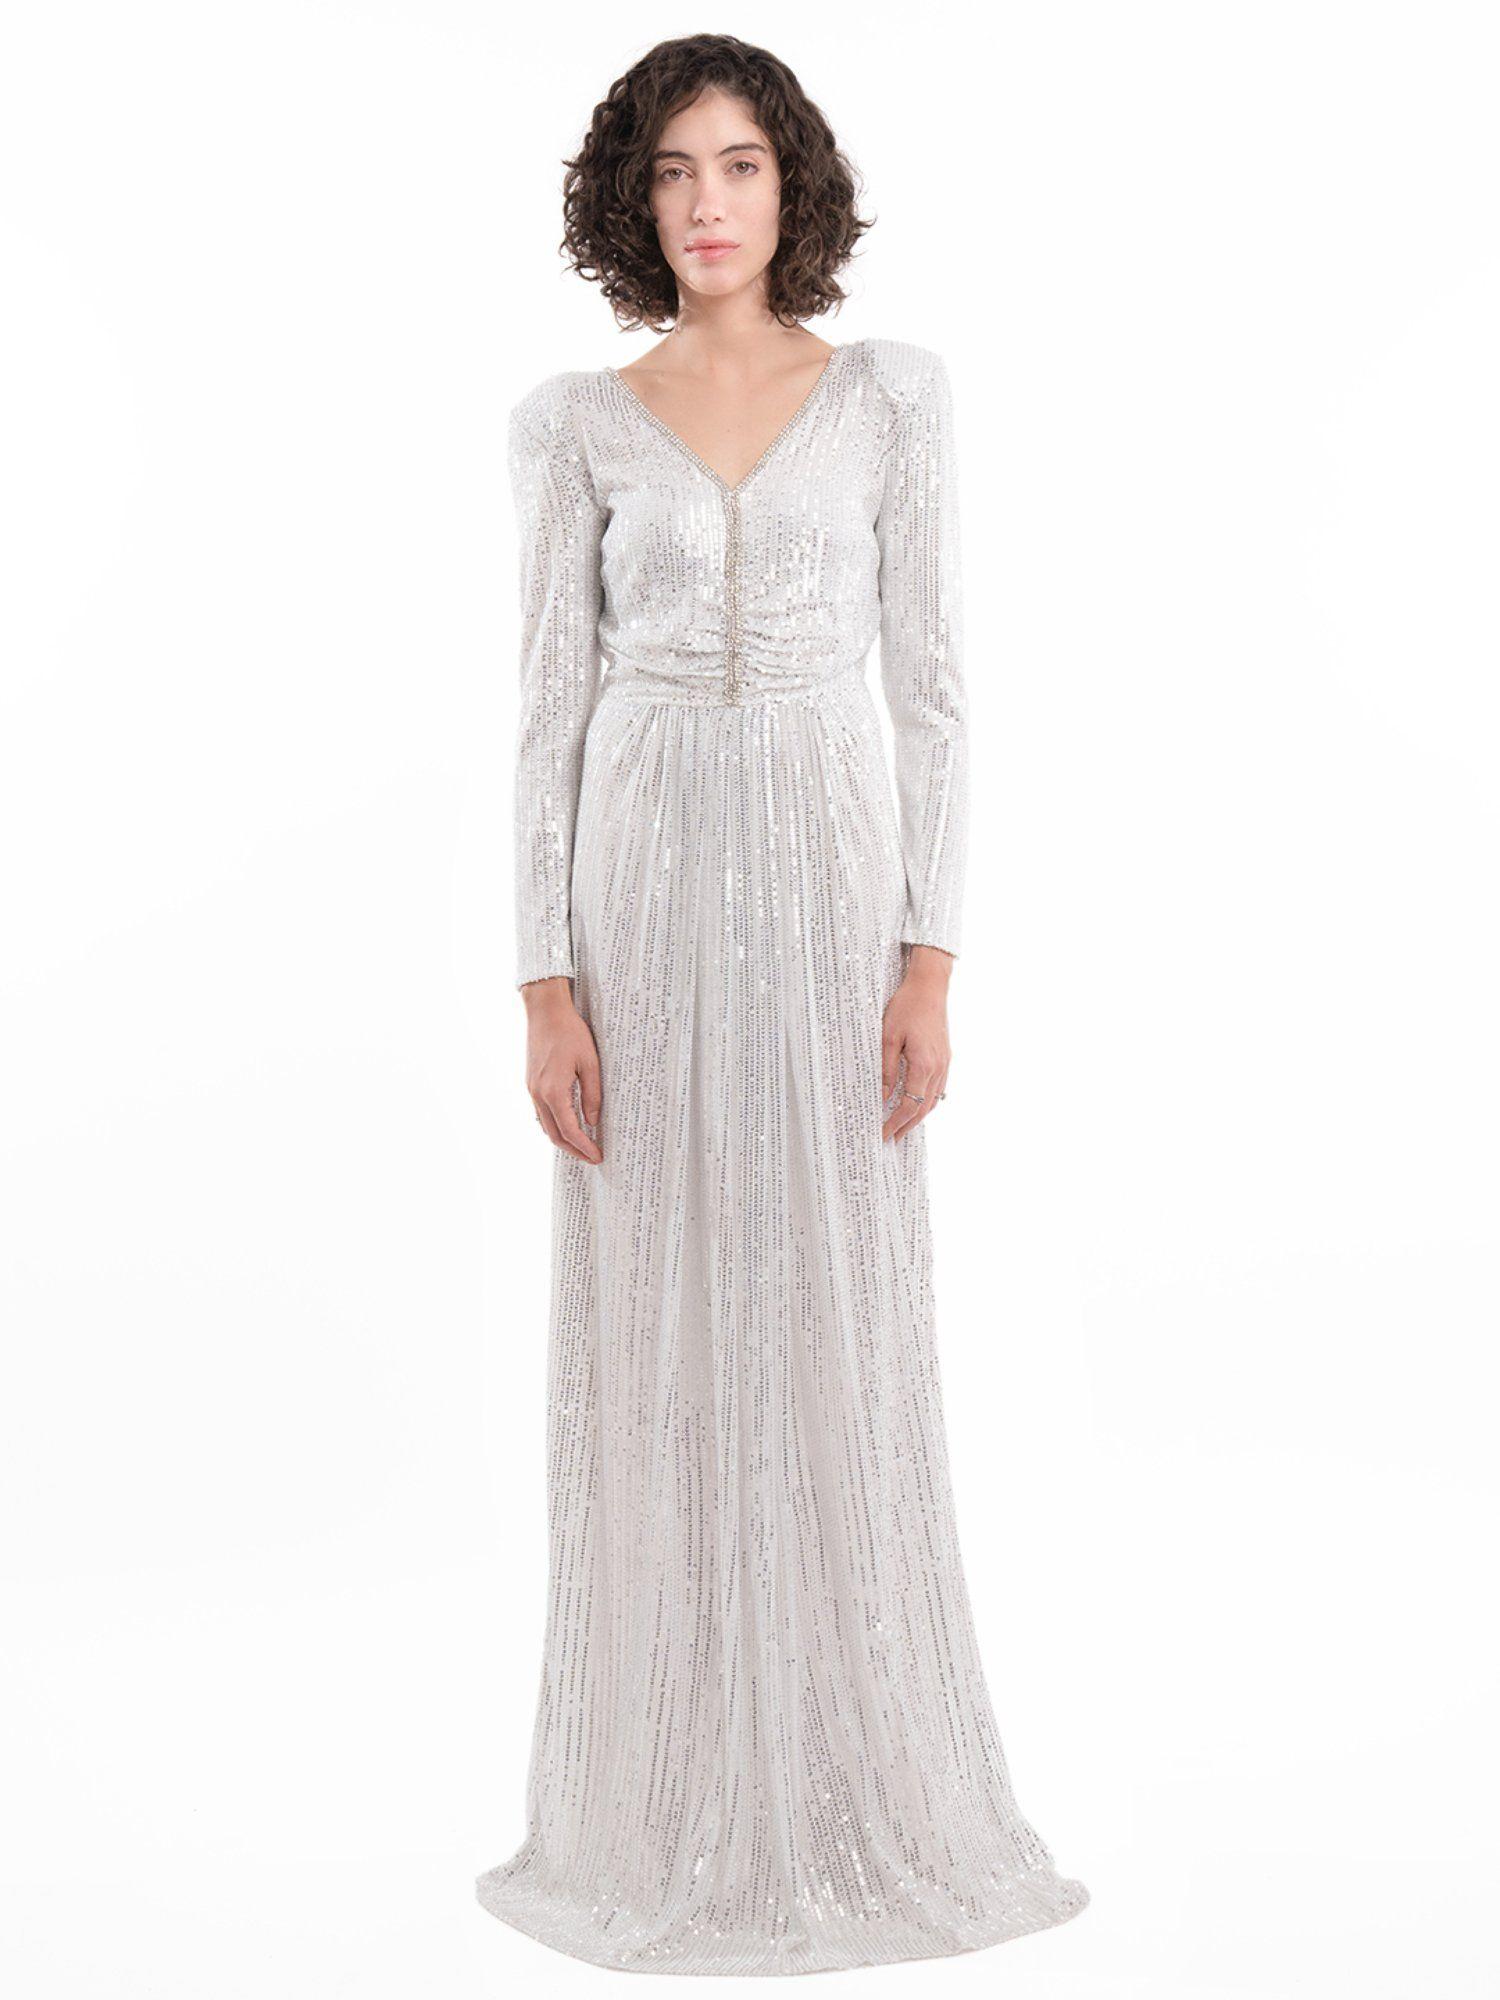 dazzle in divine white maxi dress